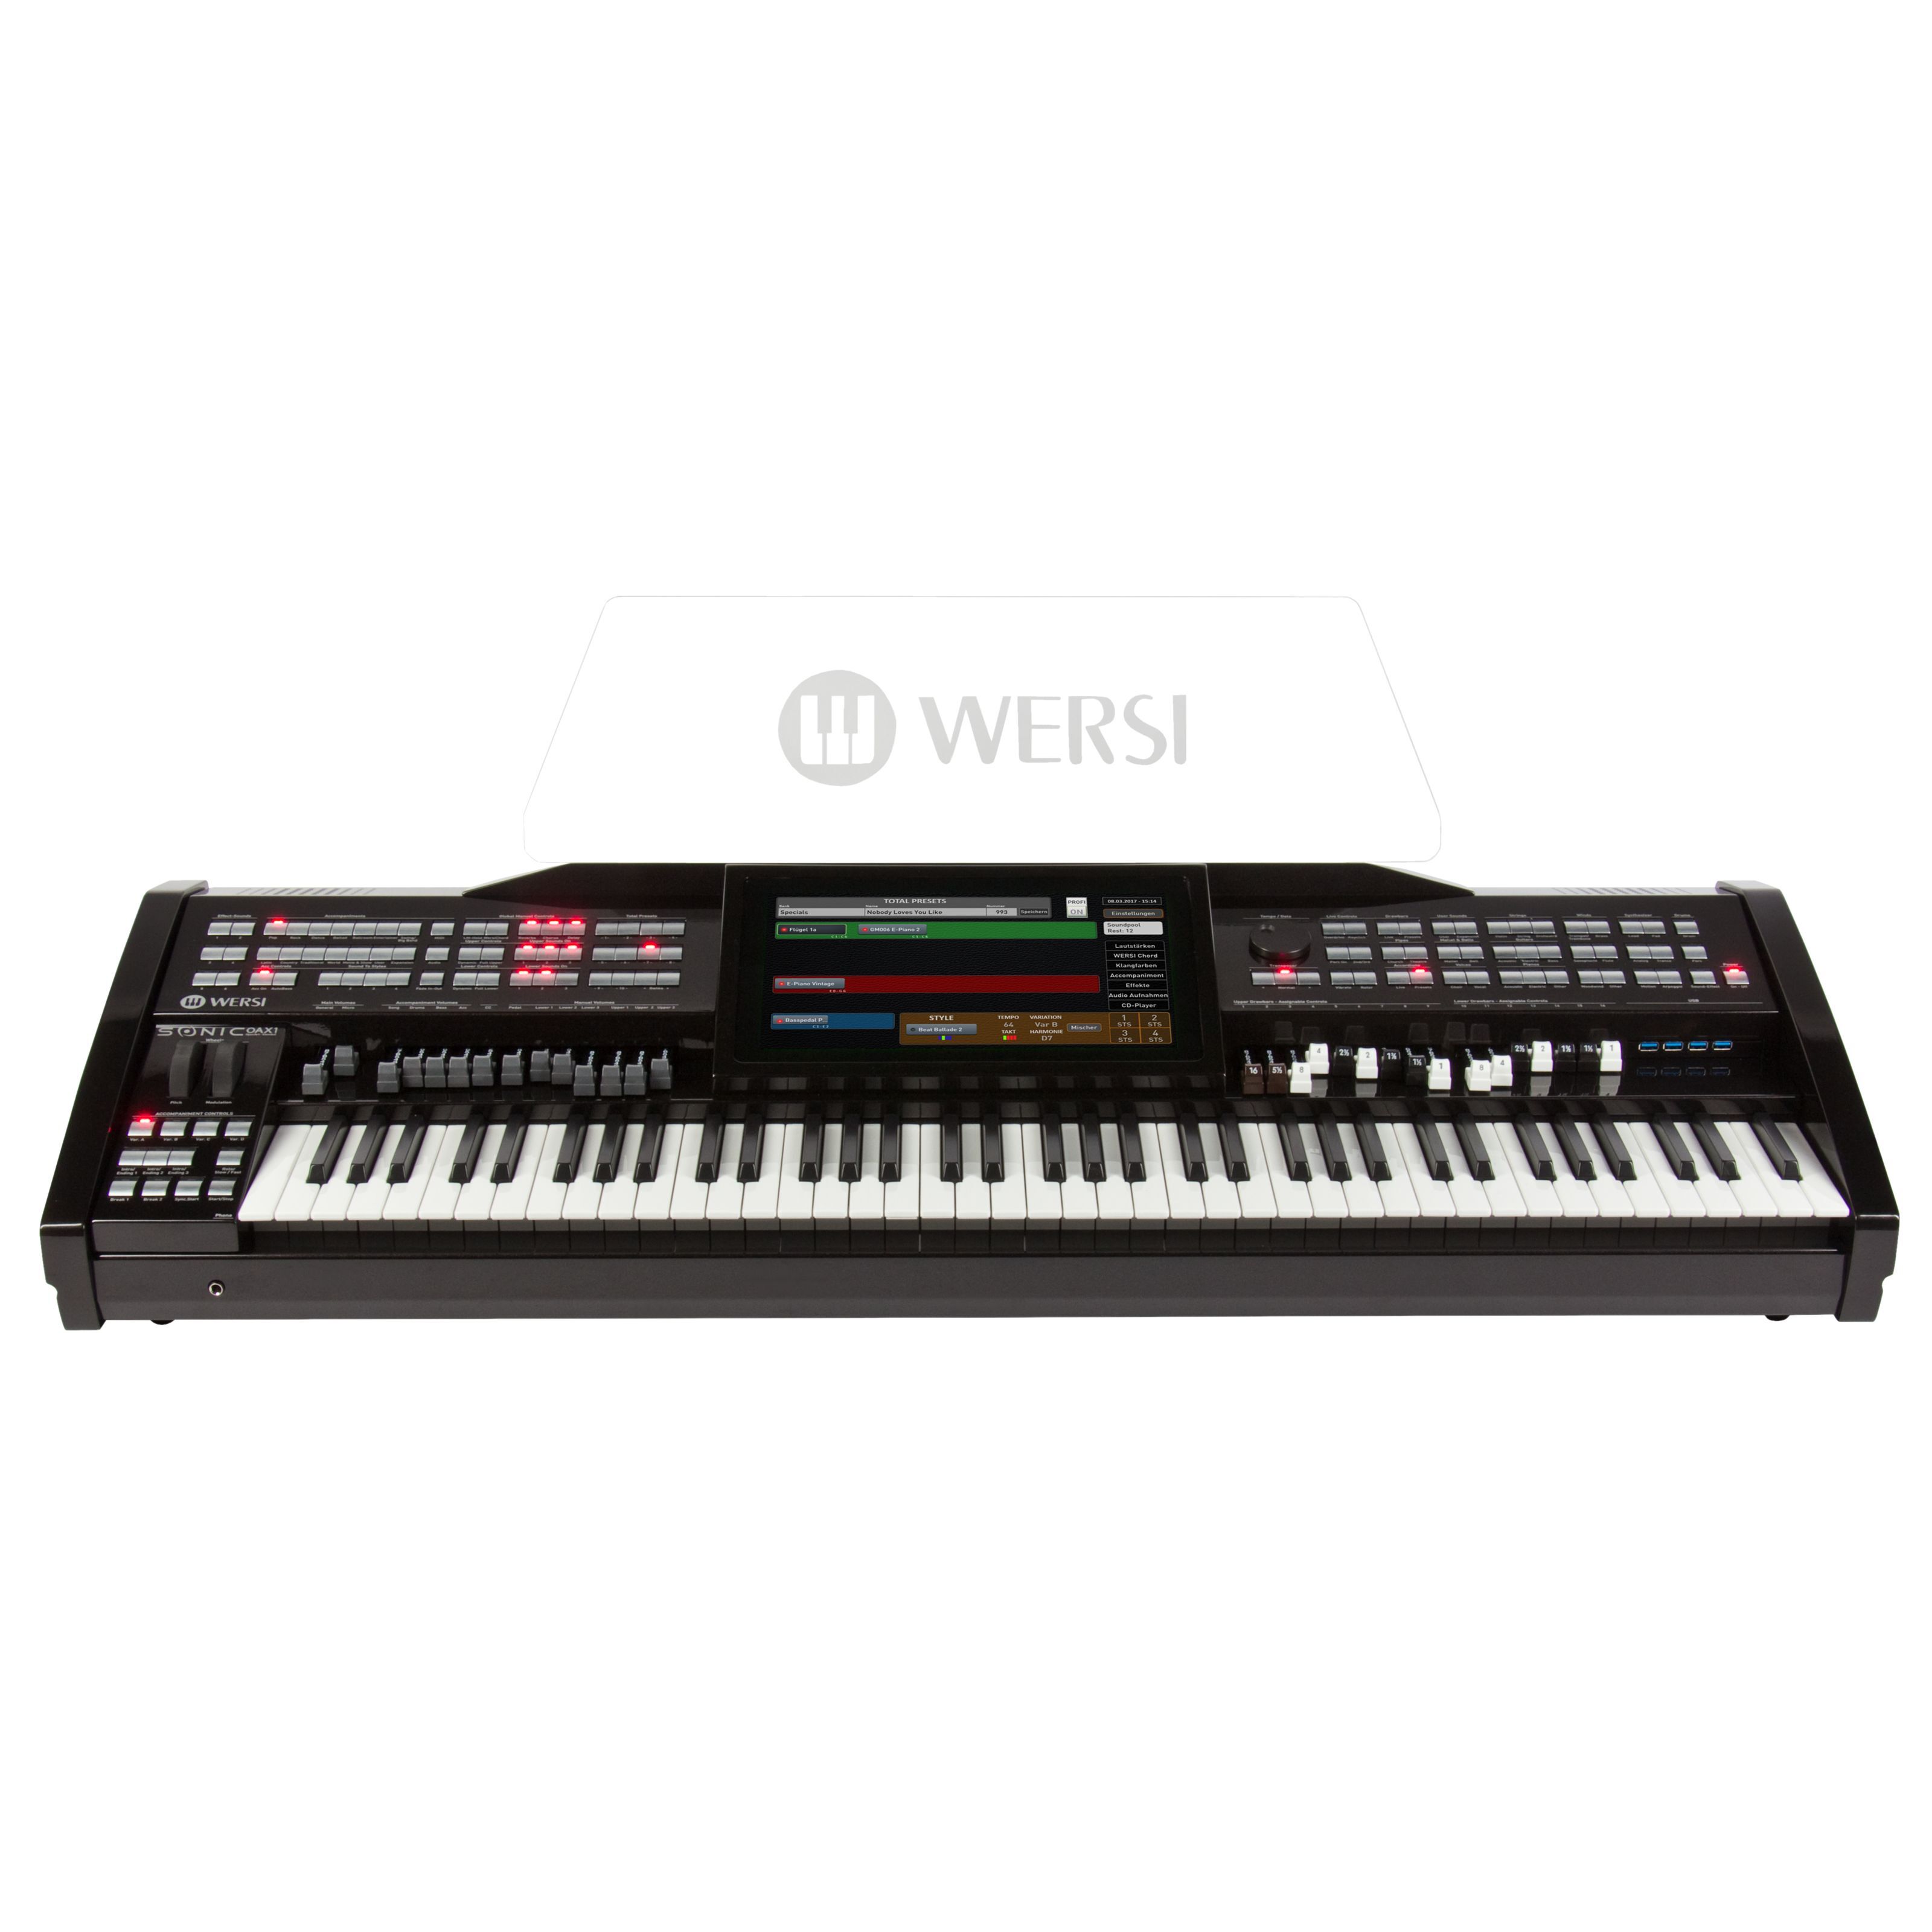 Wersi OAX1 Professional Arranger Keyboard/Orgel - Schwarz Metallic - Keyboard